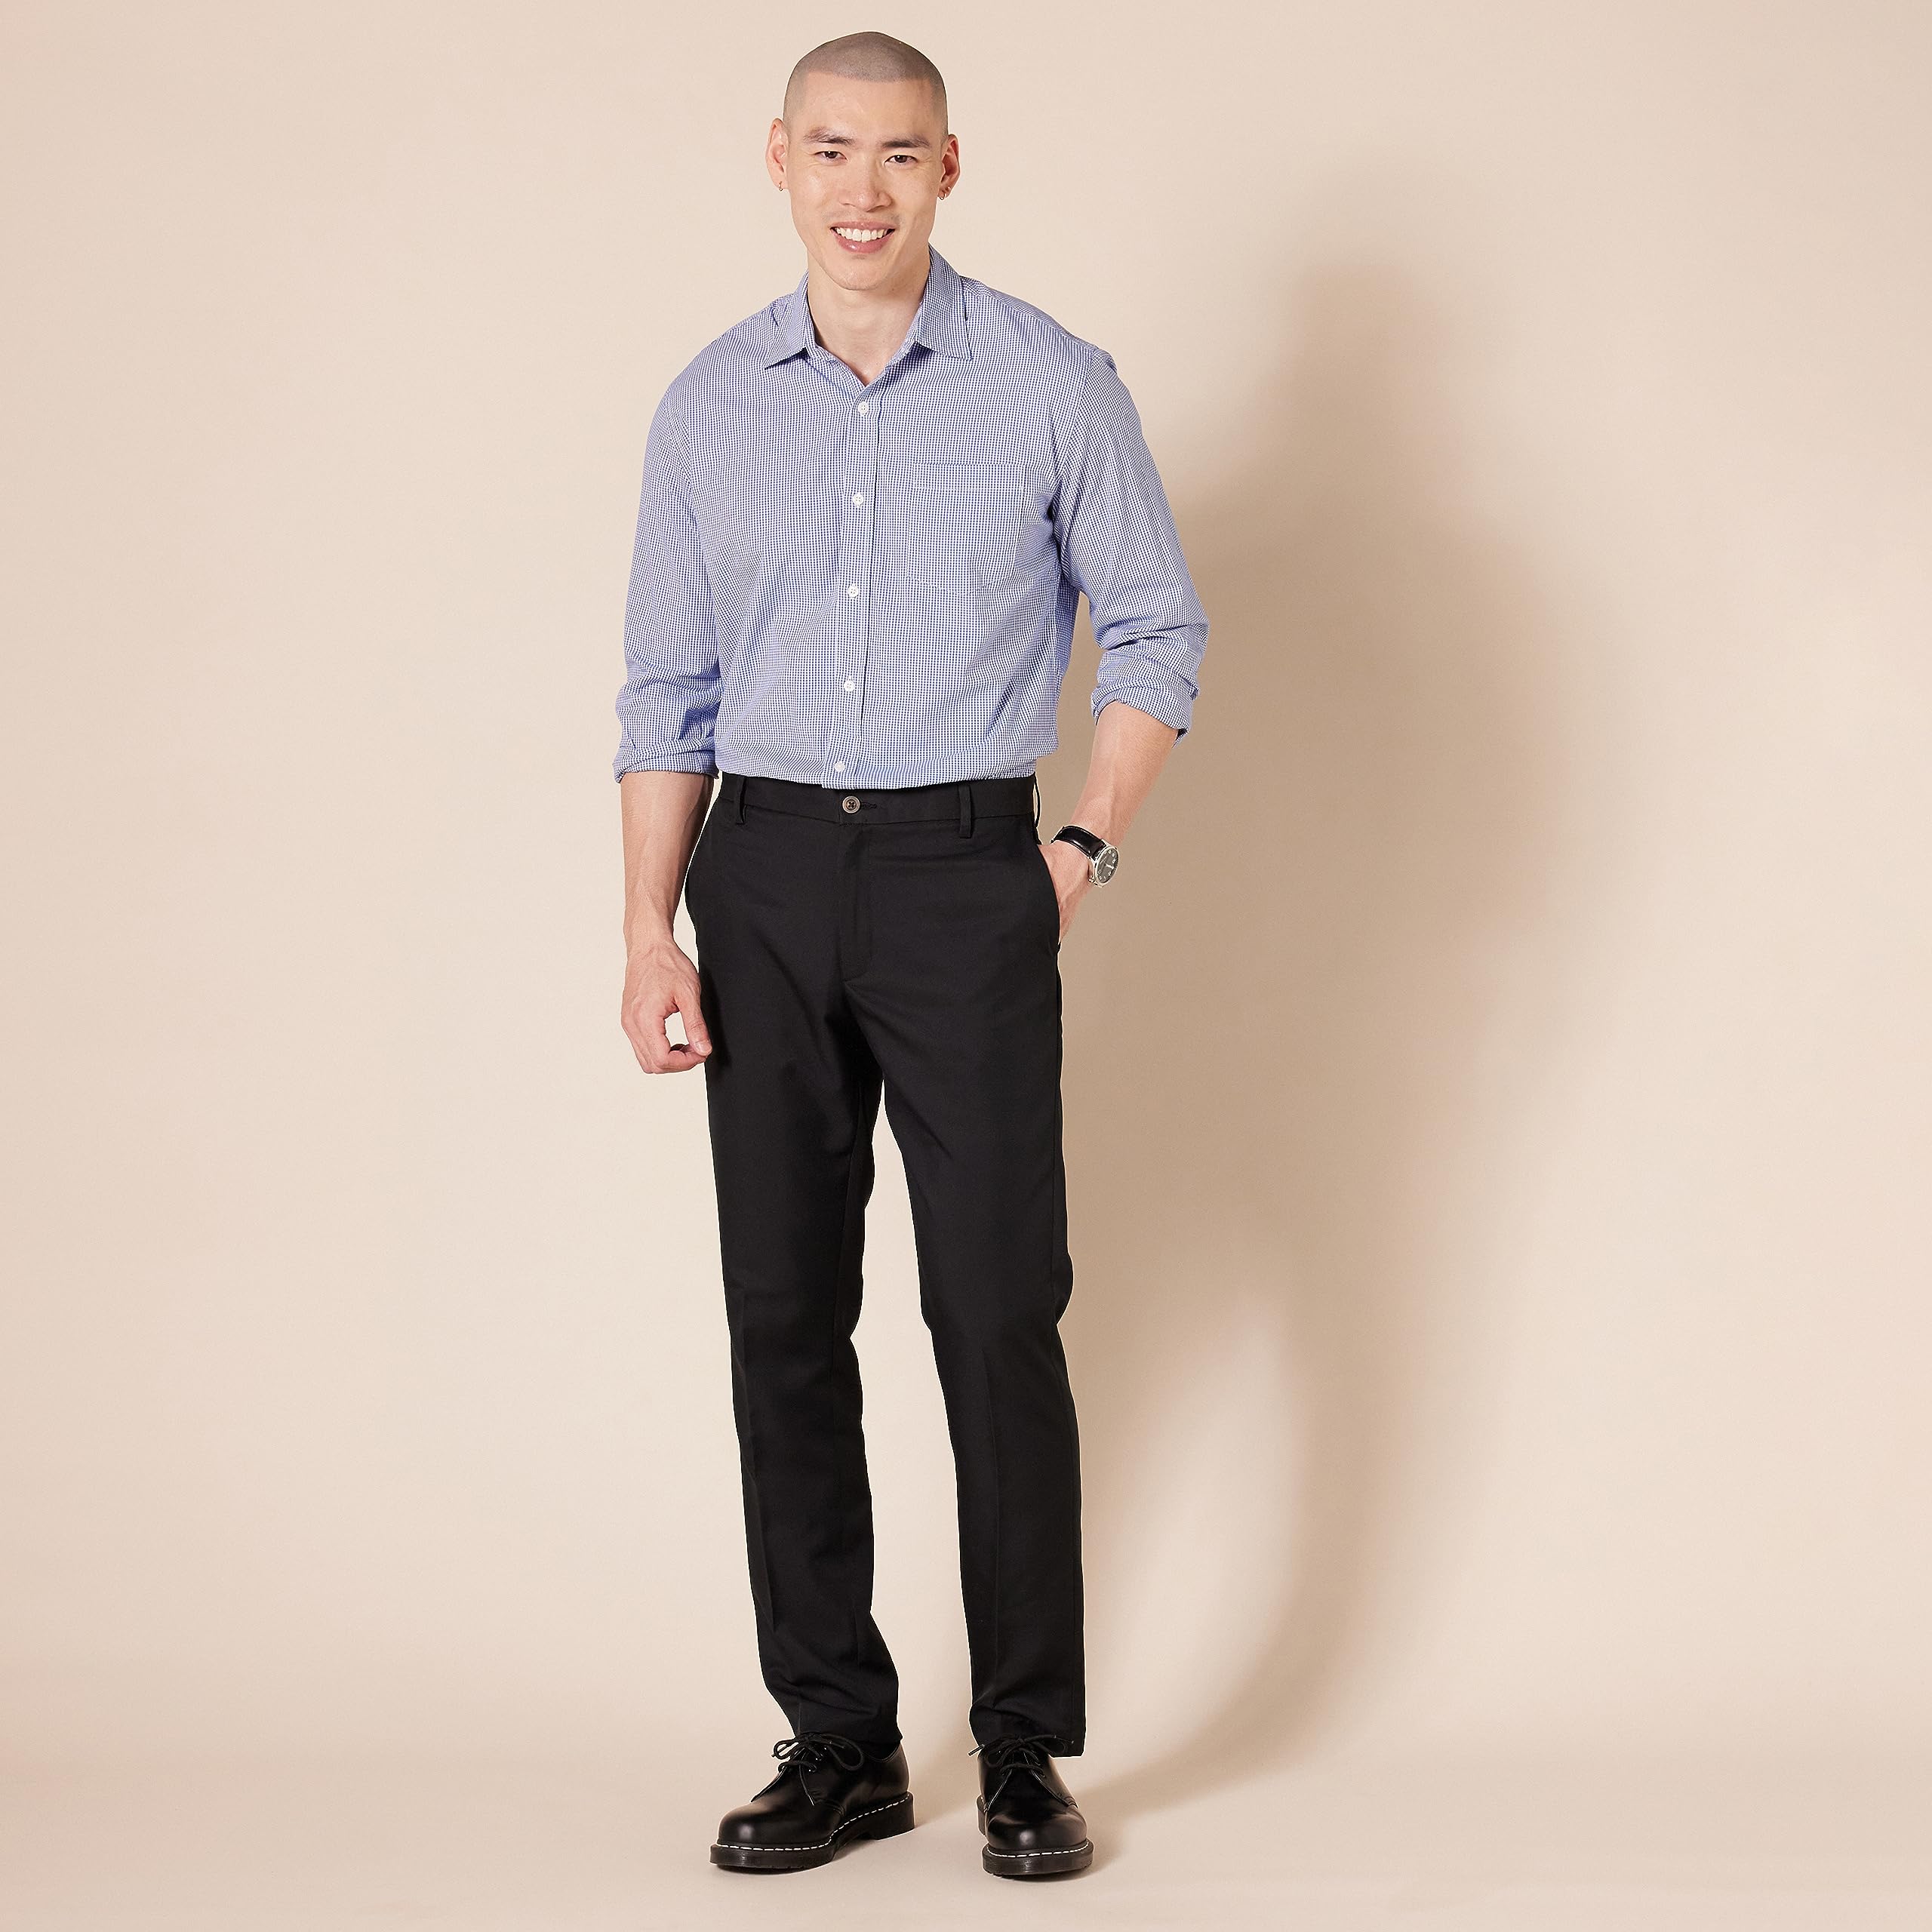 Amazon Essentials Men's Slim-Fit Flat-Front Dress Pant